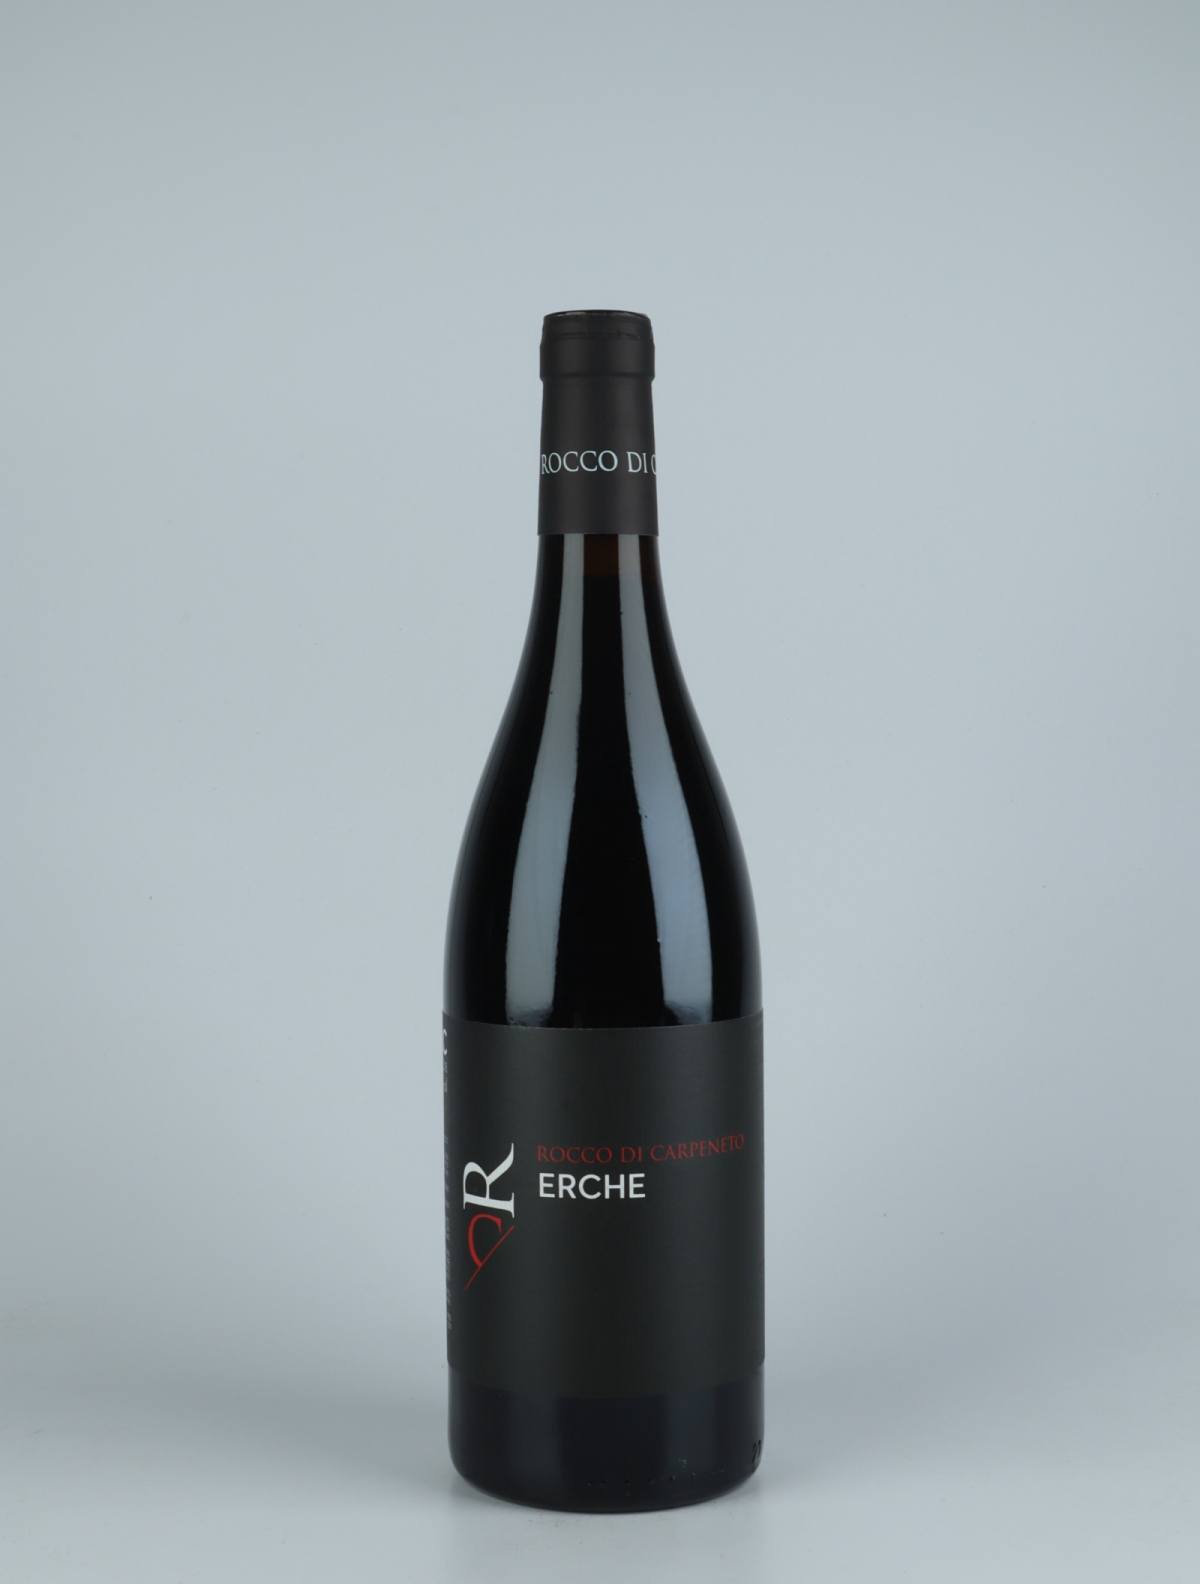 A bottle 2018 Erche Red wine from Rocco di Carpeneto, Piedmont in Italy